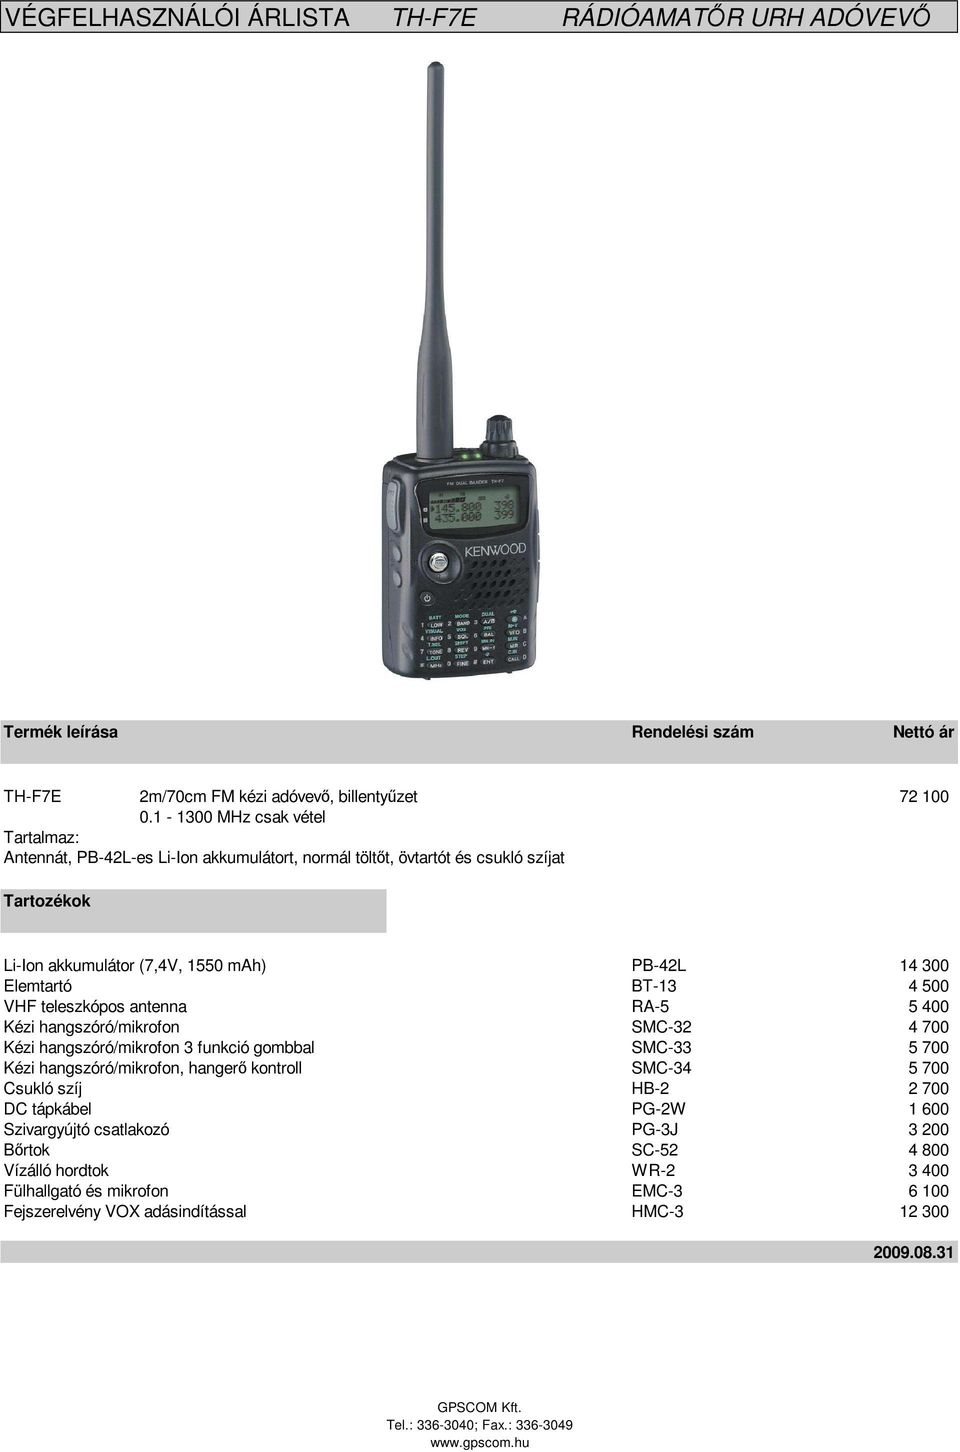 BT-13 4 500 VHF teleszkópos antenna RA-5 5 400 Kézi hangszóró/mikrofon SMC-32 4 700 Kézi hangszóró/mikrofon 3 funkció gombbal SMC-33 5 700 Kézi hangszóró/mikrofon,